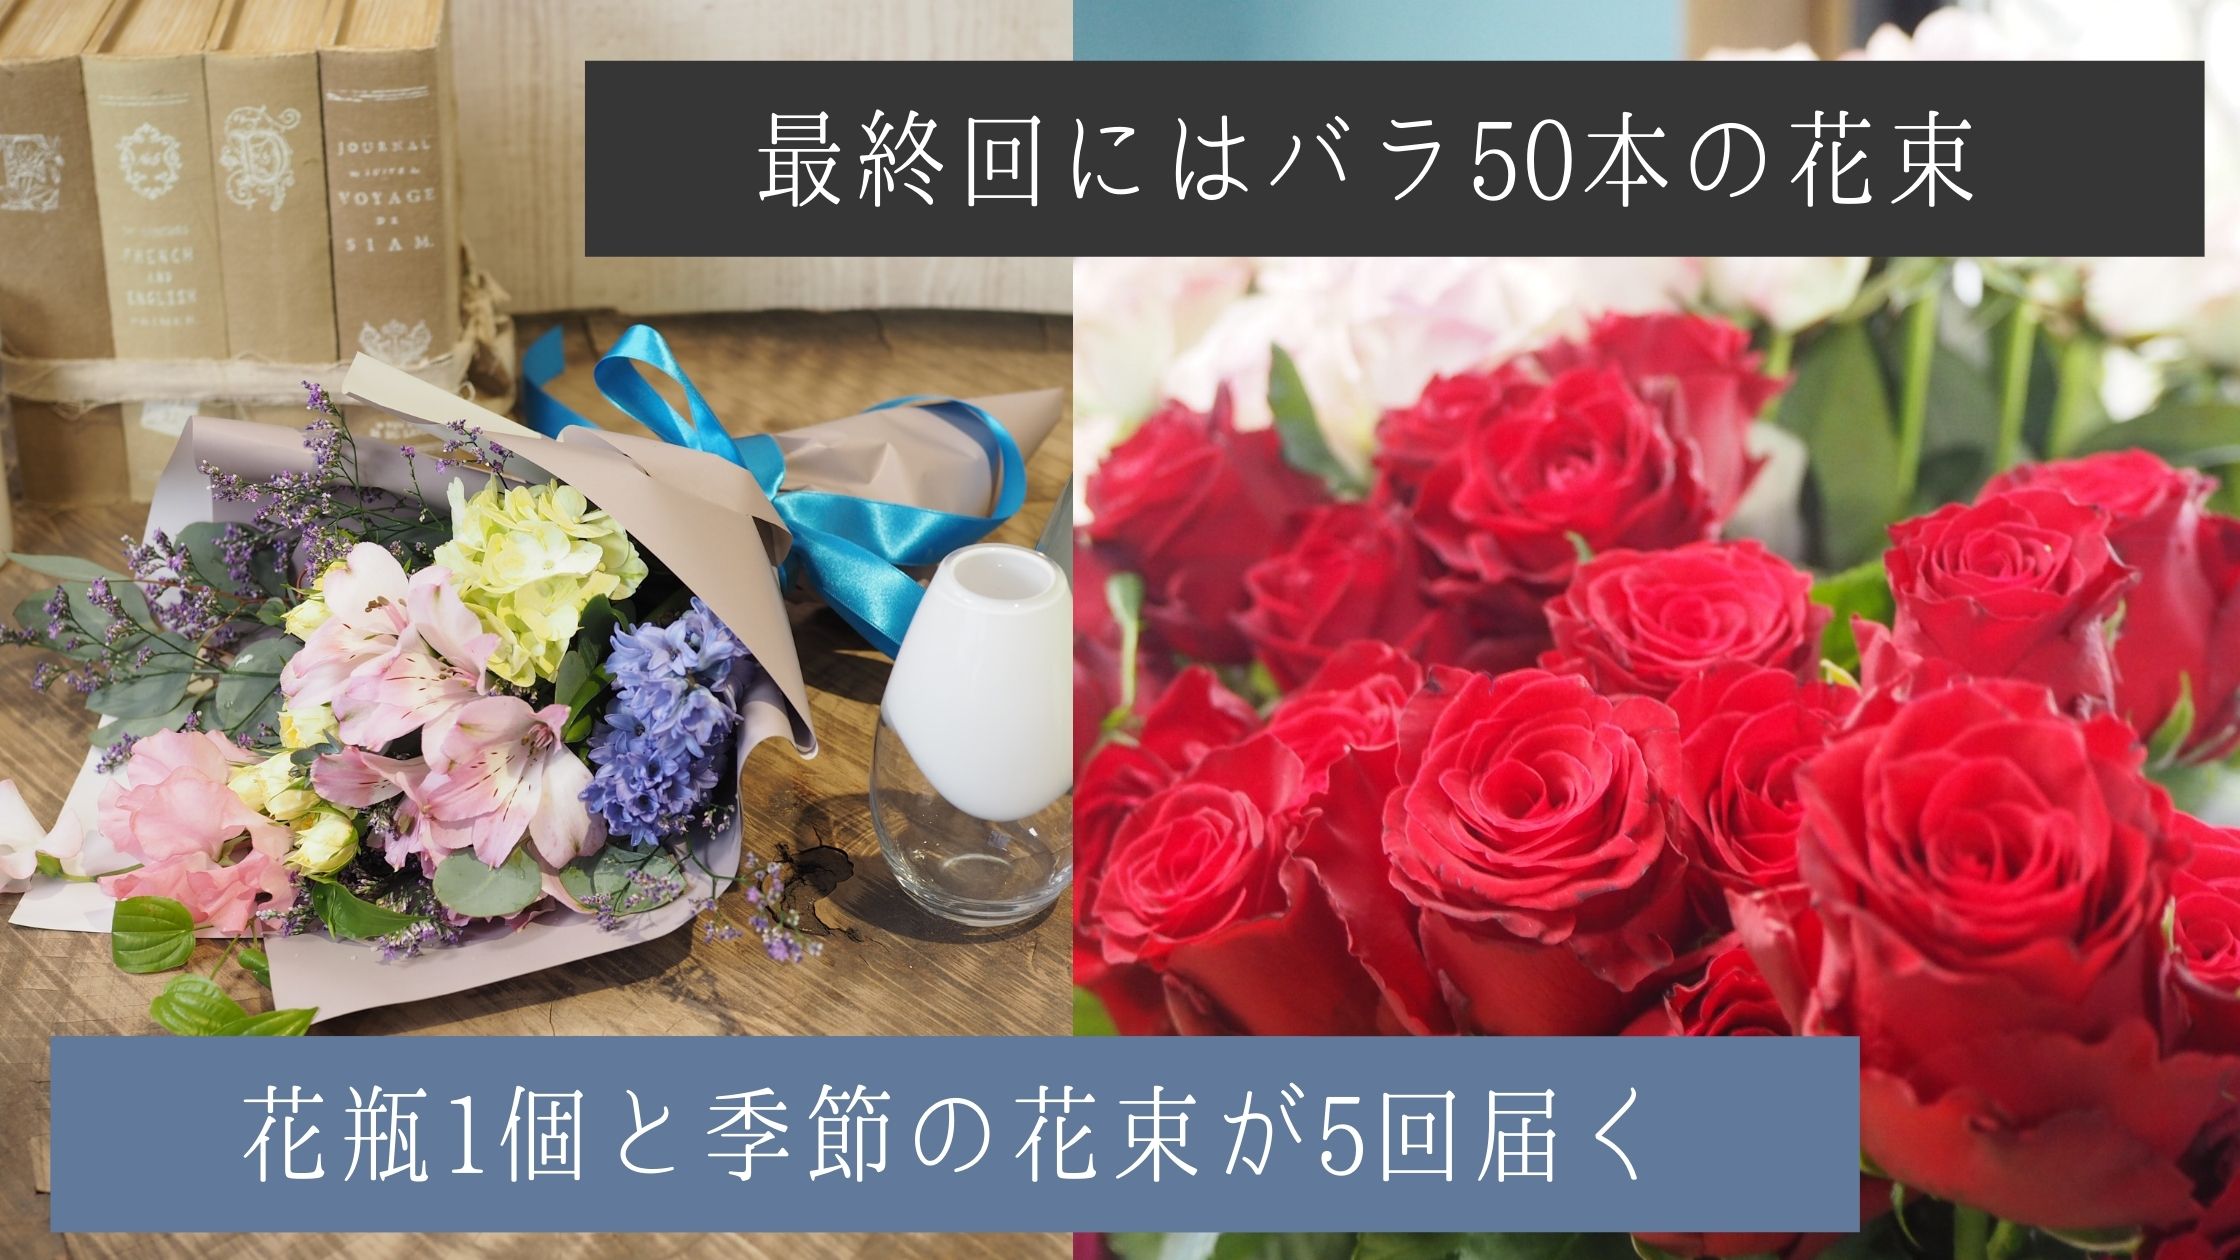 お花のお届け50,000円コース